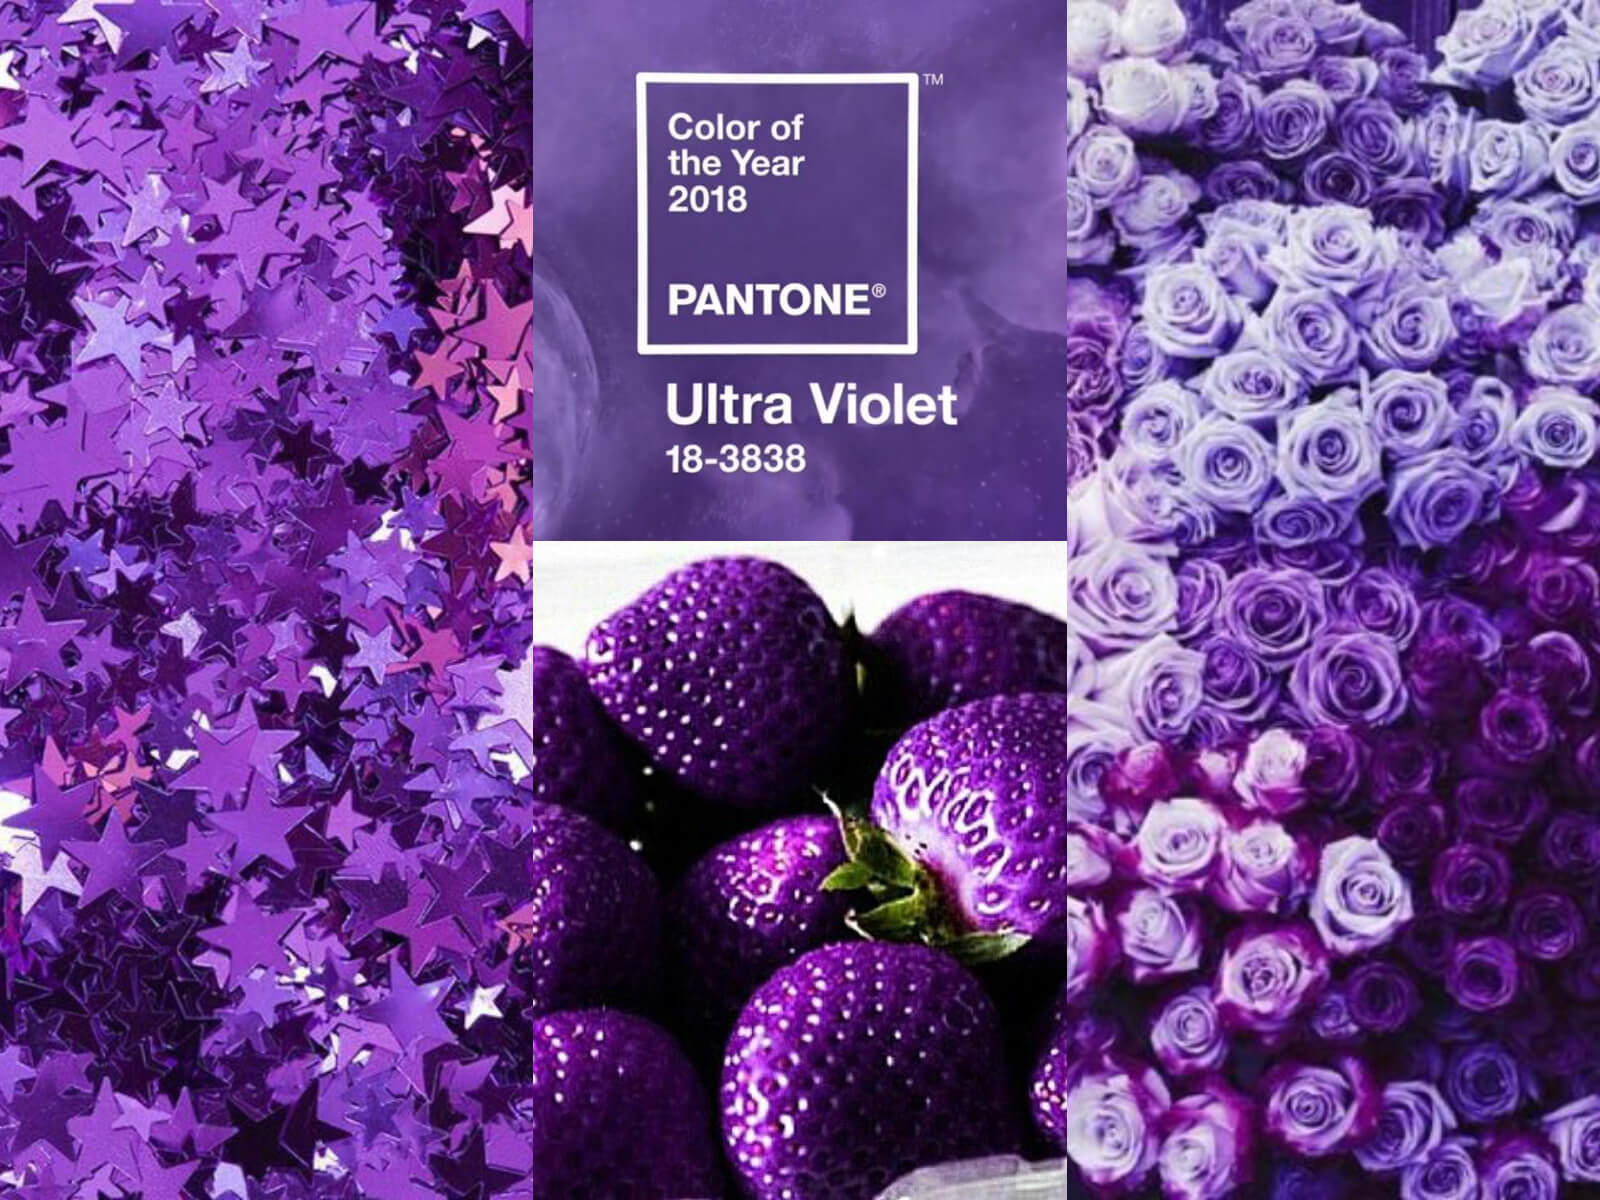 Violet1